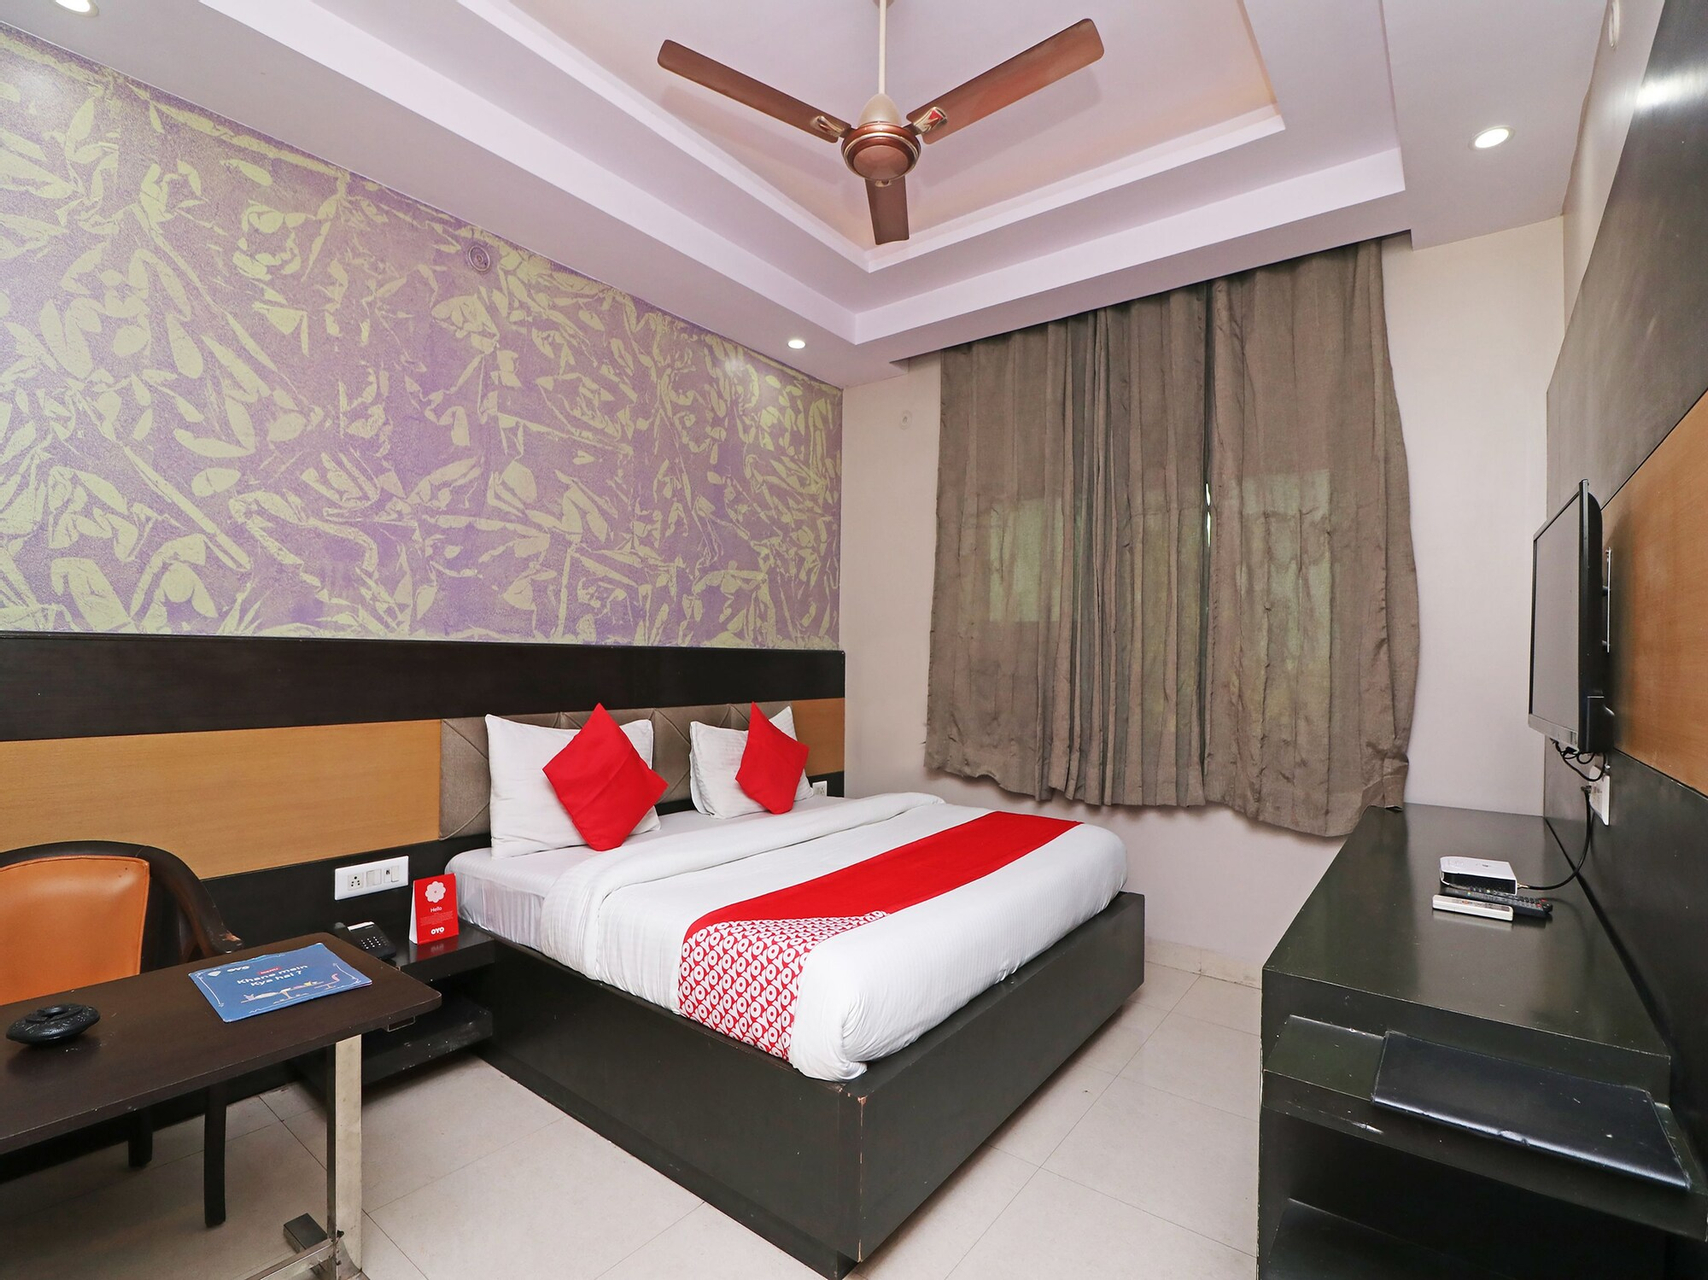 Bedroom, Capital O 29029 RC Hotel, Rewari